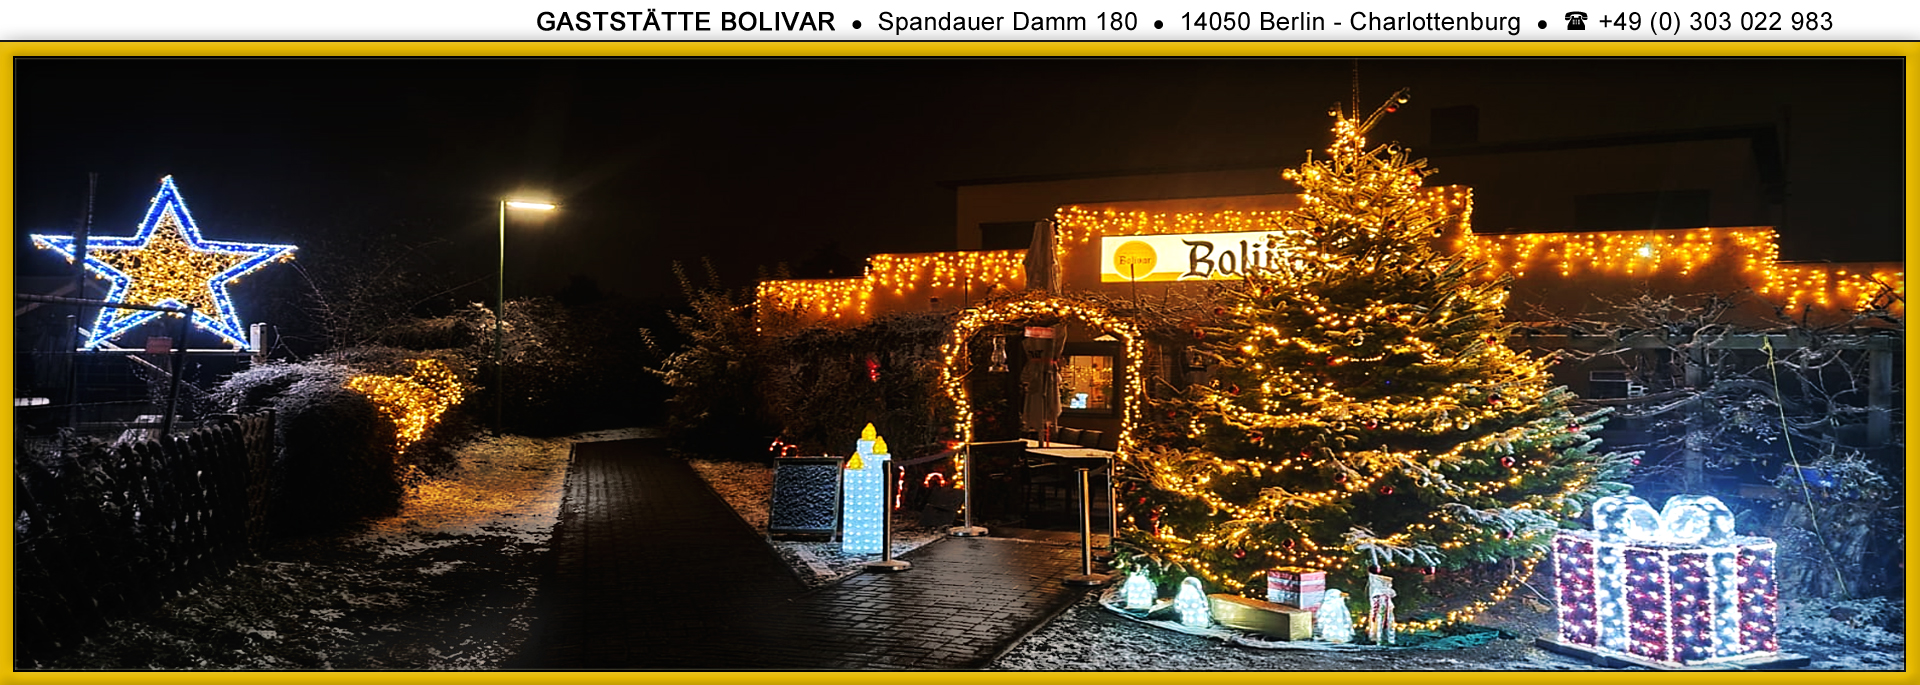 bolivar-berlin-charlottenburg-westend-weihnachten-04